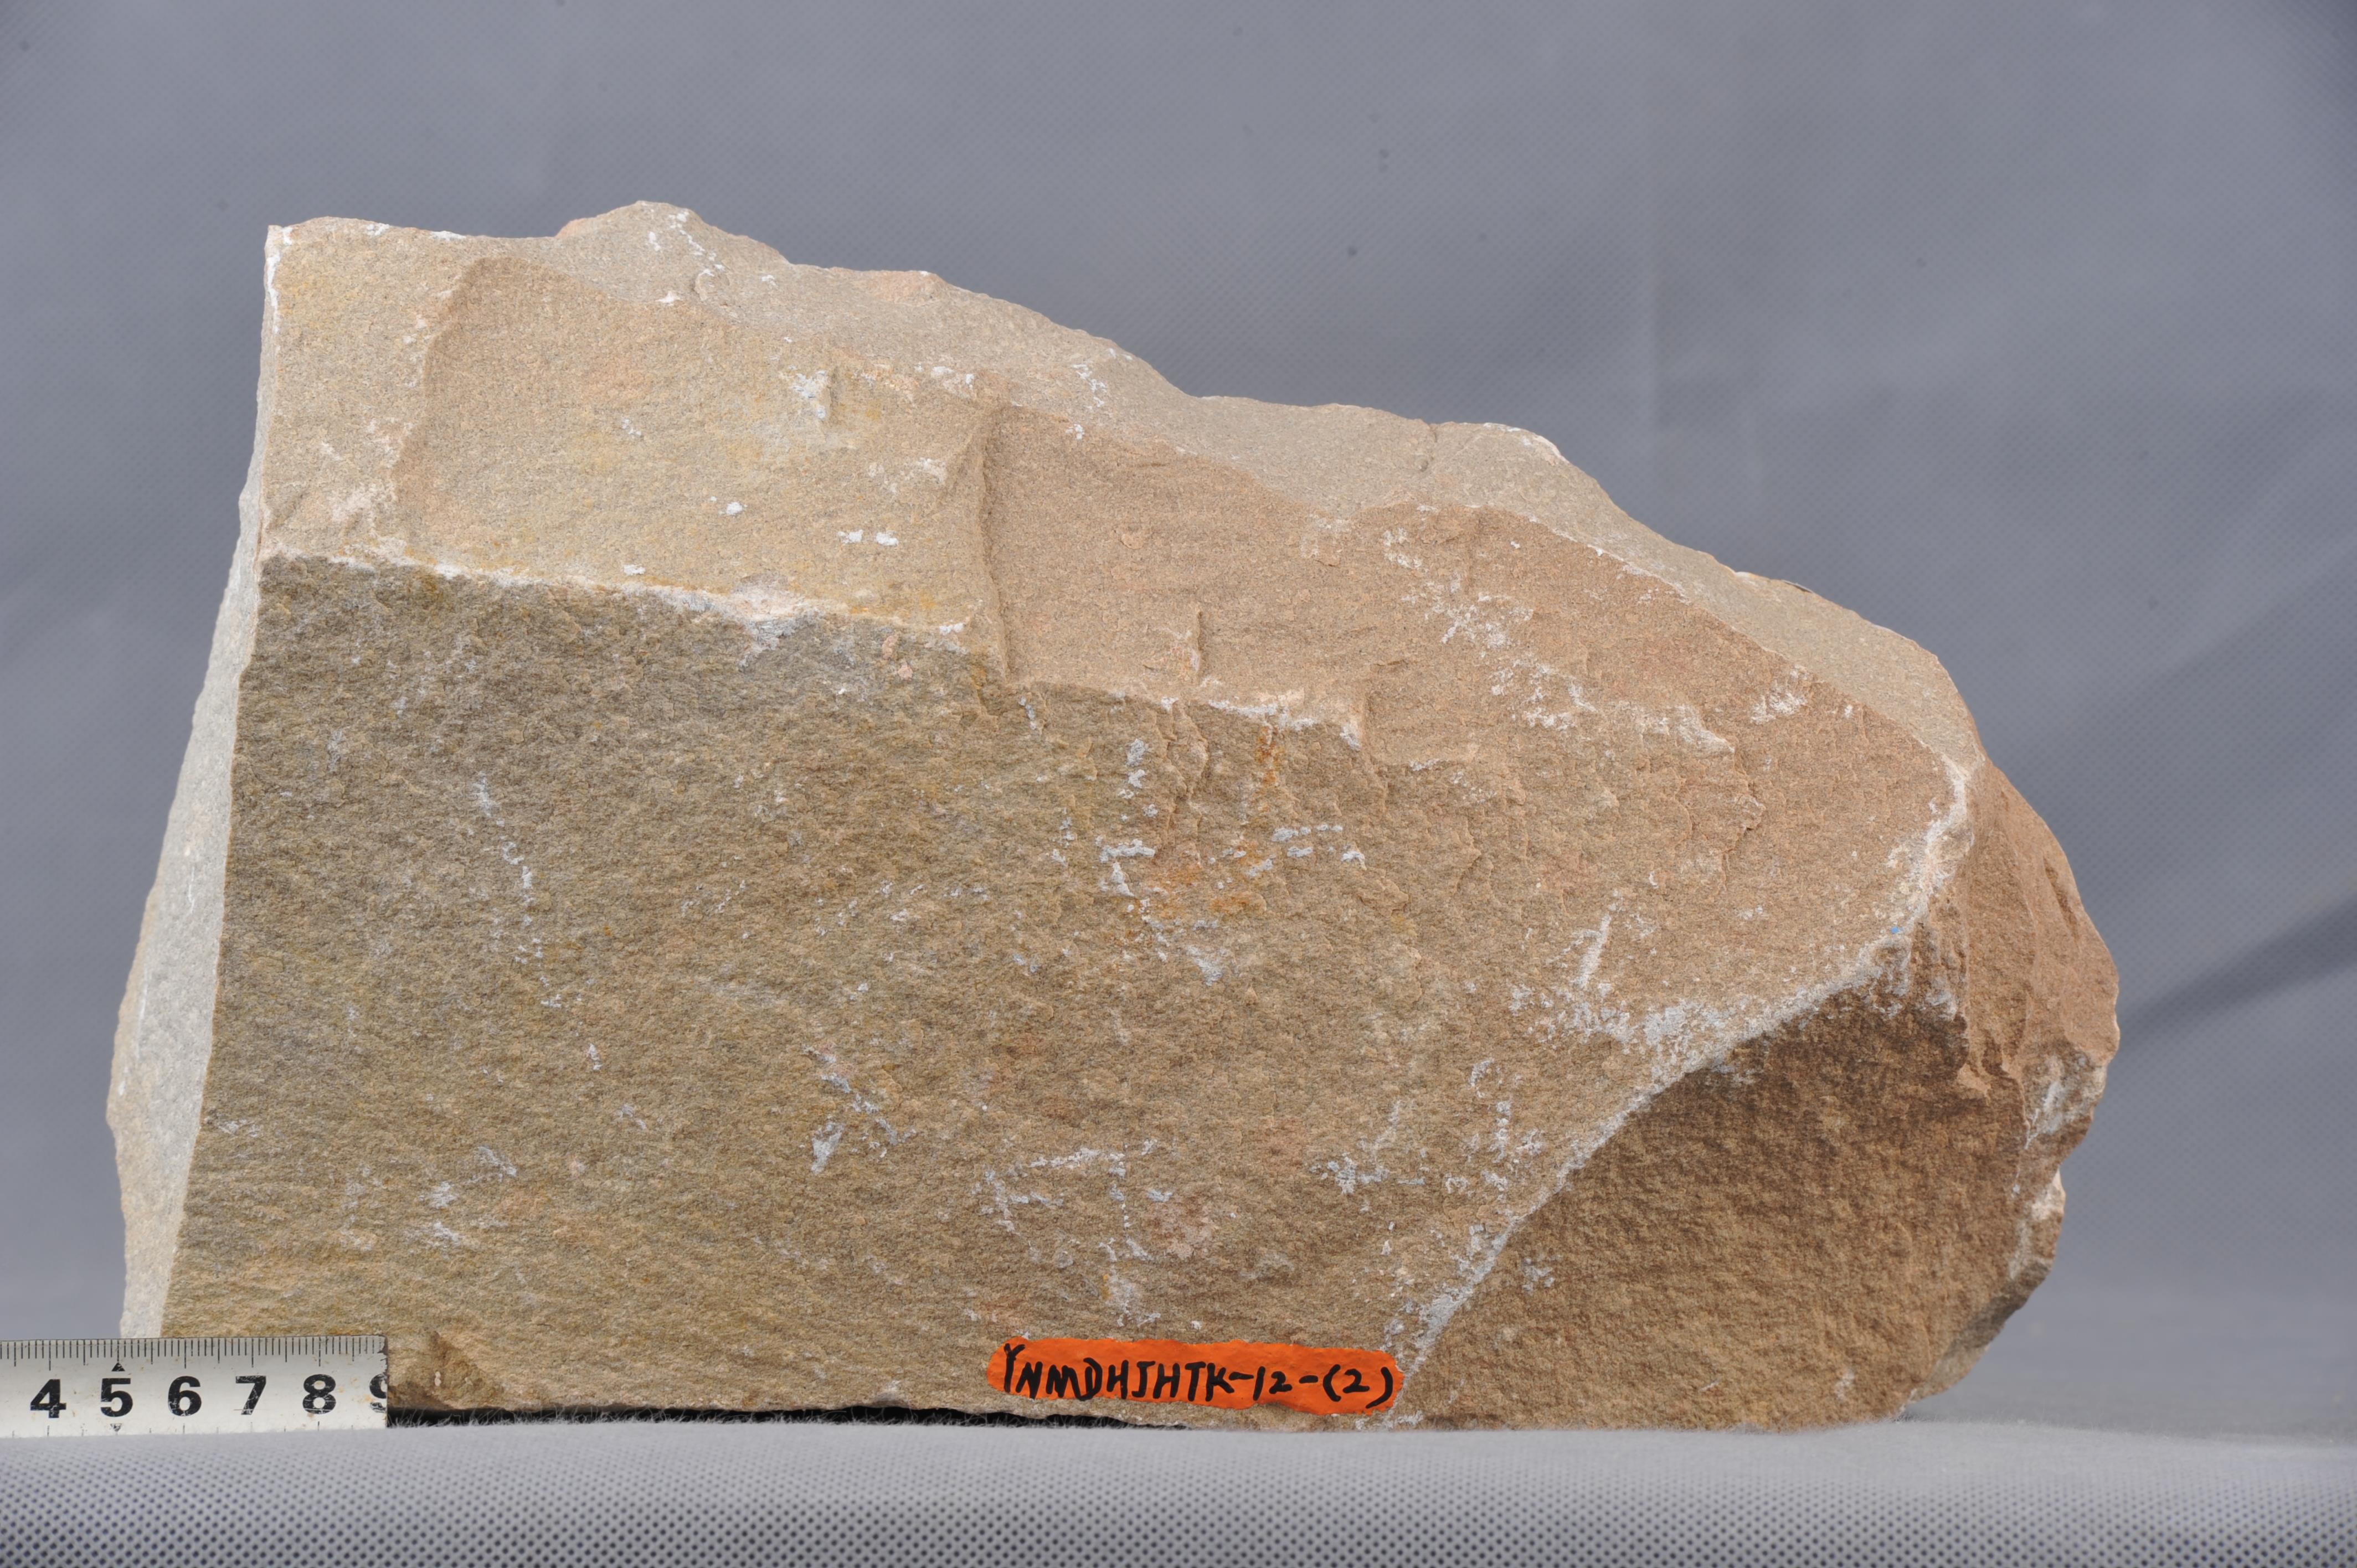 长石石英砂岩:浅灰色,细粒,块状,成分要为石英,长石,致密.